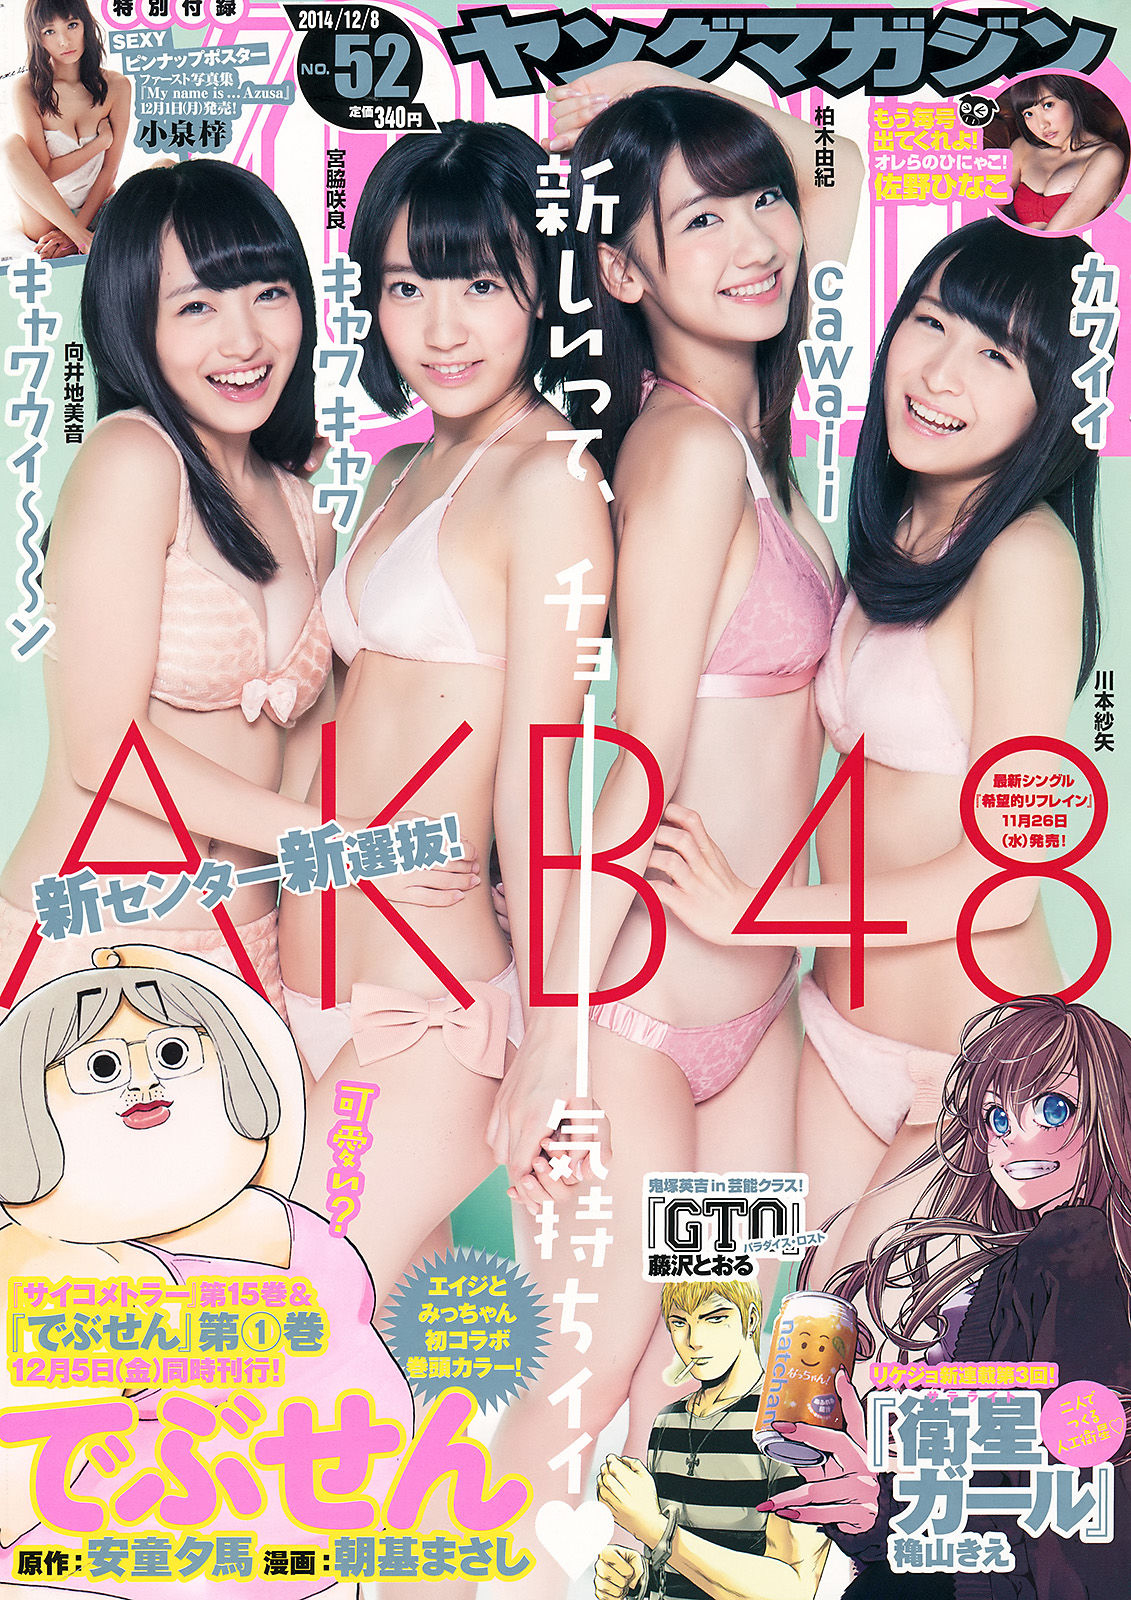 [Young Magazine]杂志:AKB48高品质壁纸图片珍藏版(14P)